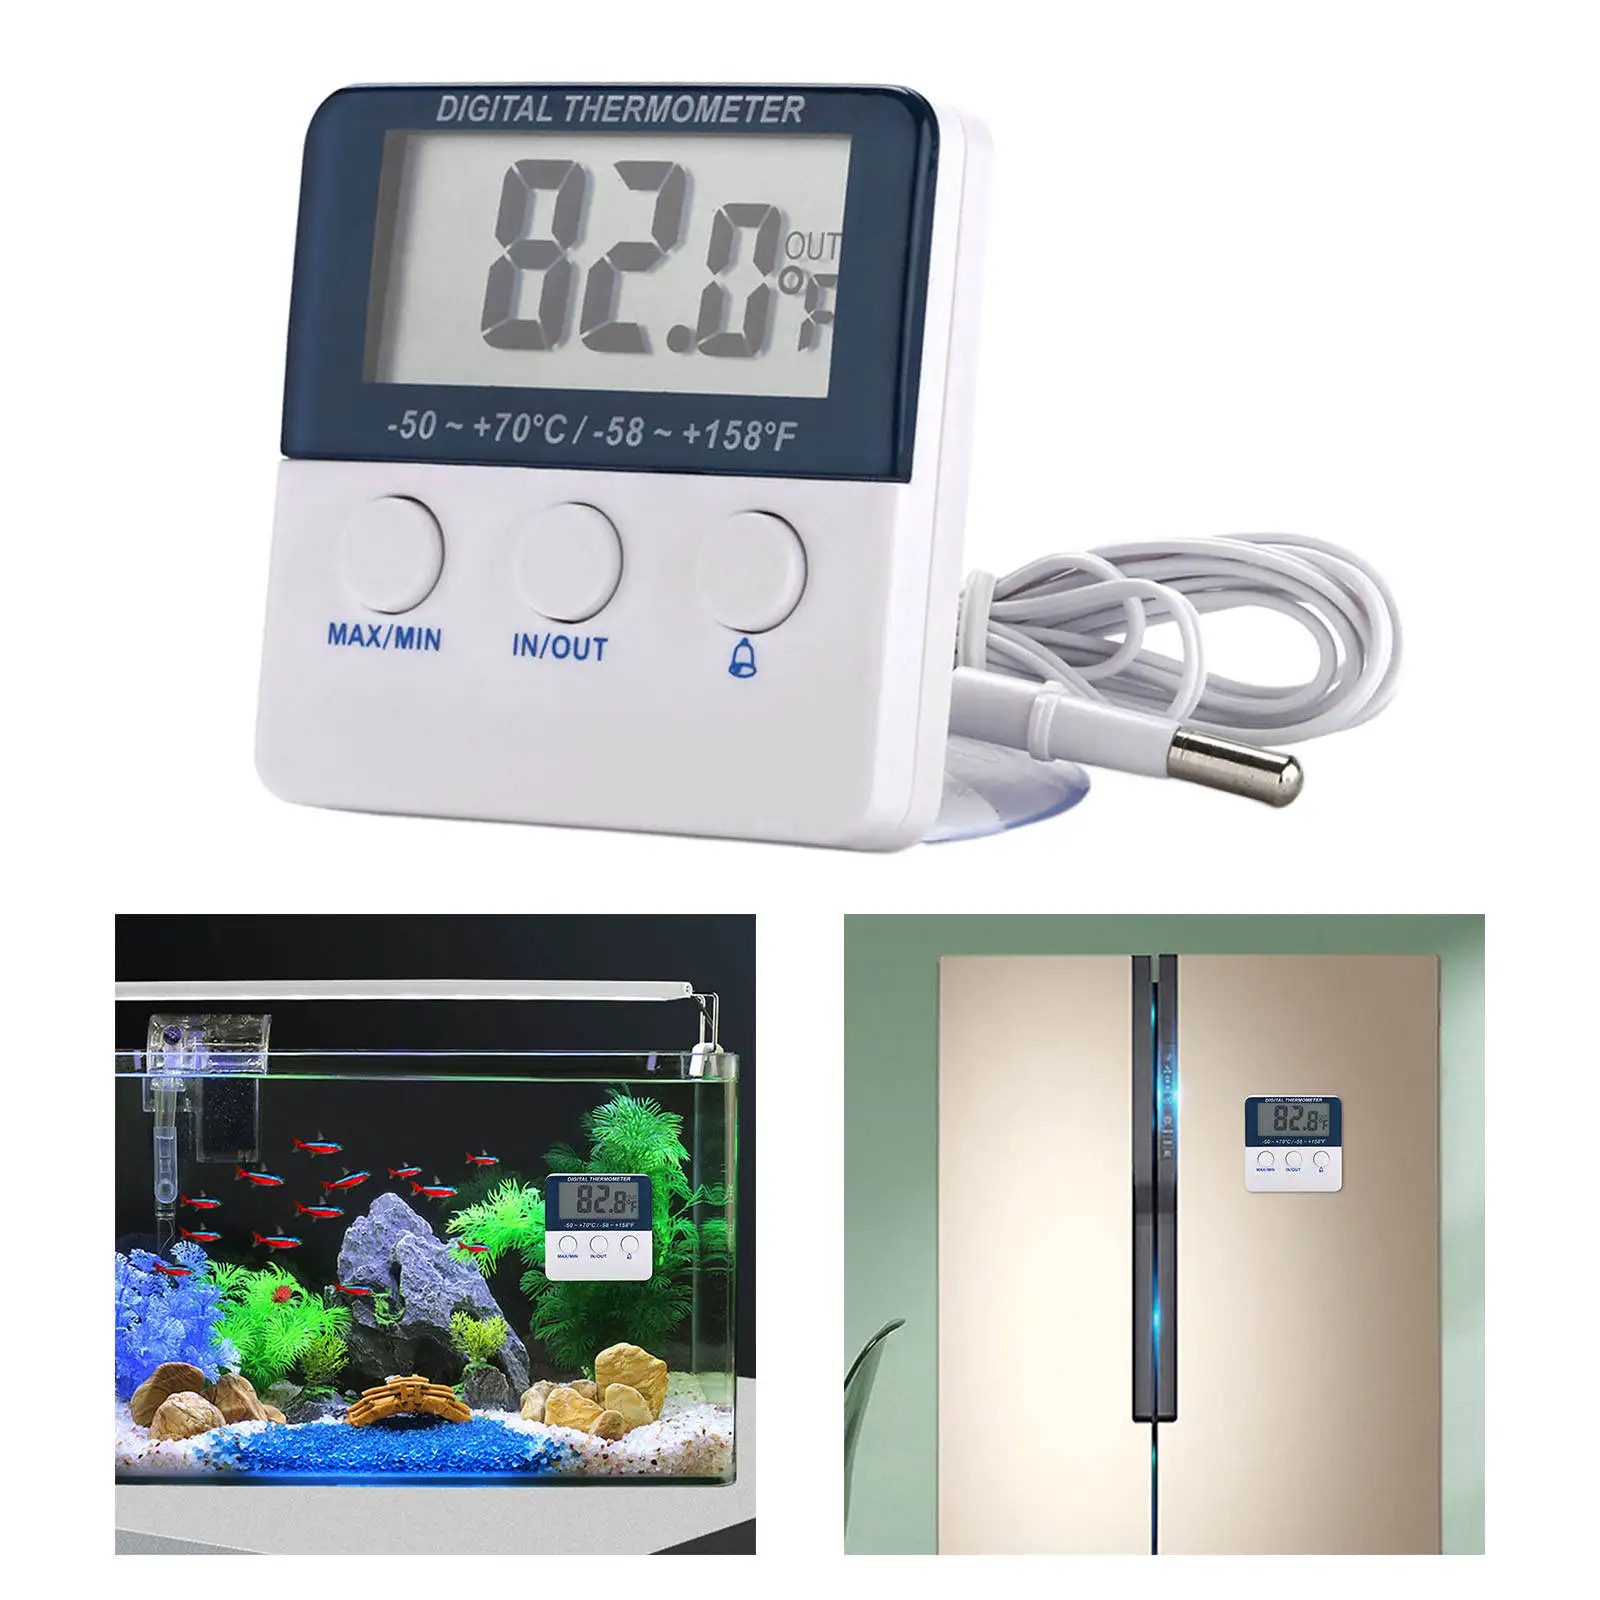 Electronic Temperature Sensor Digital with Alarm Function Temperature Monitor for Fridge Aquarium Tank Water Terrarium